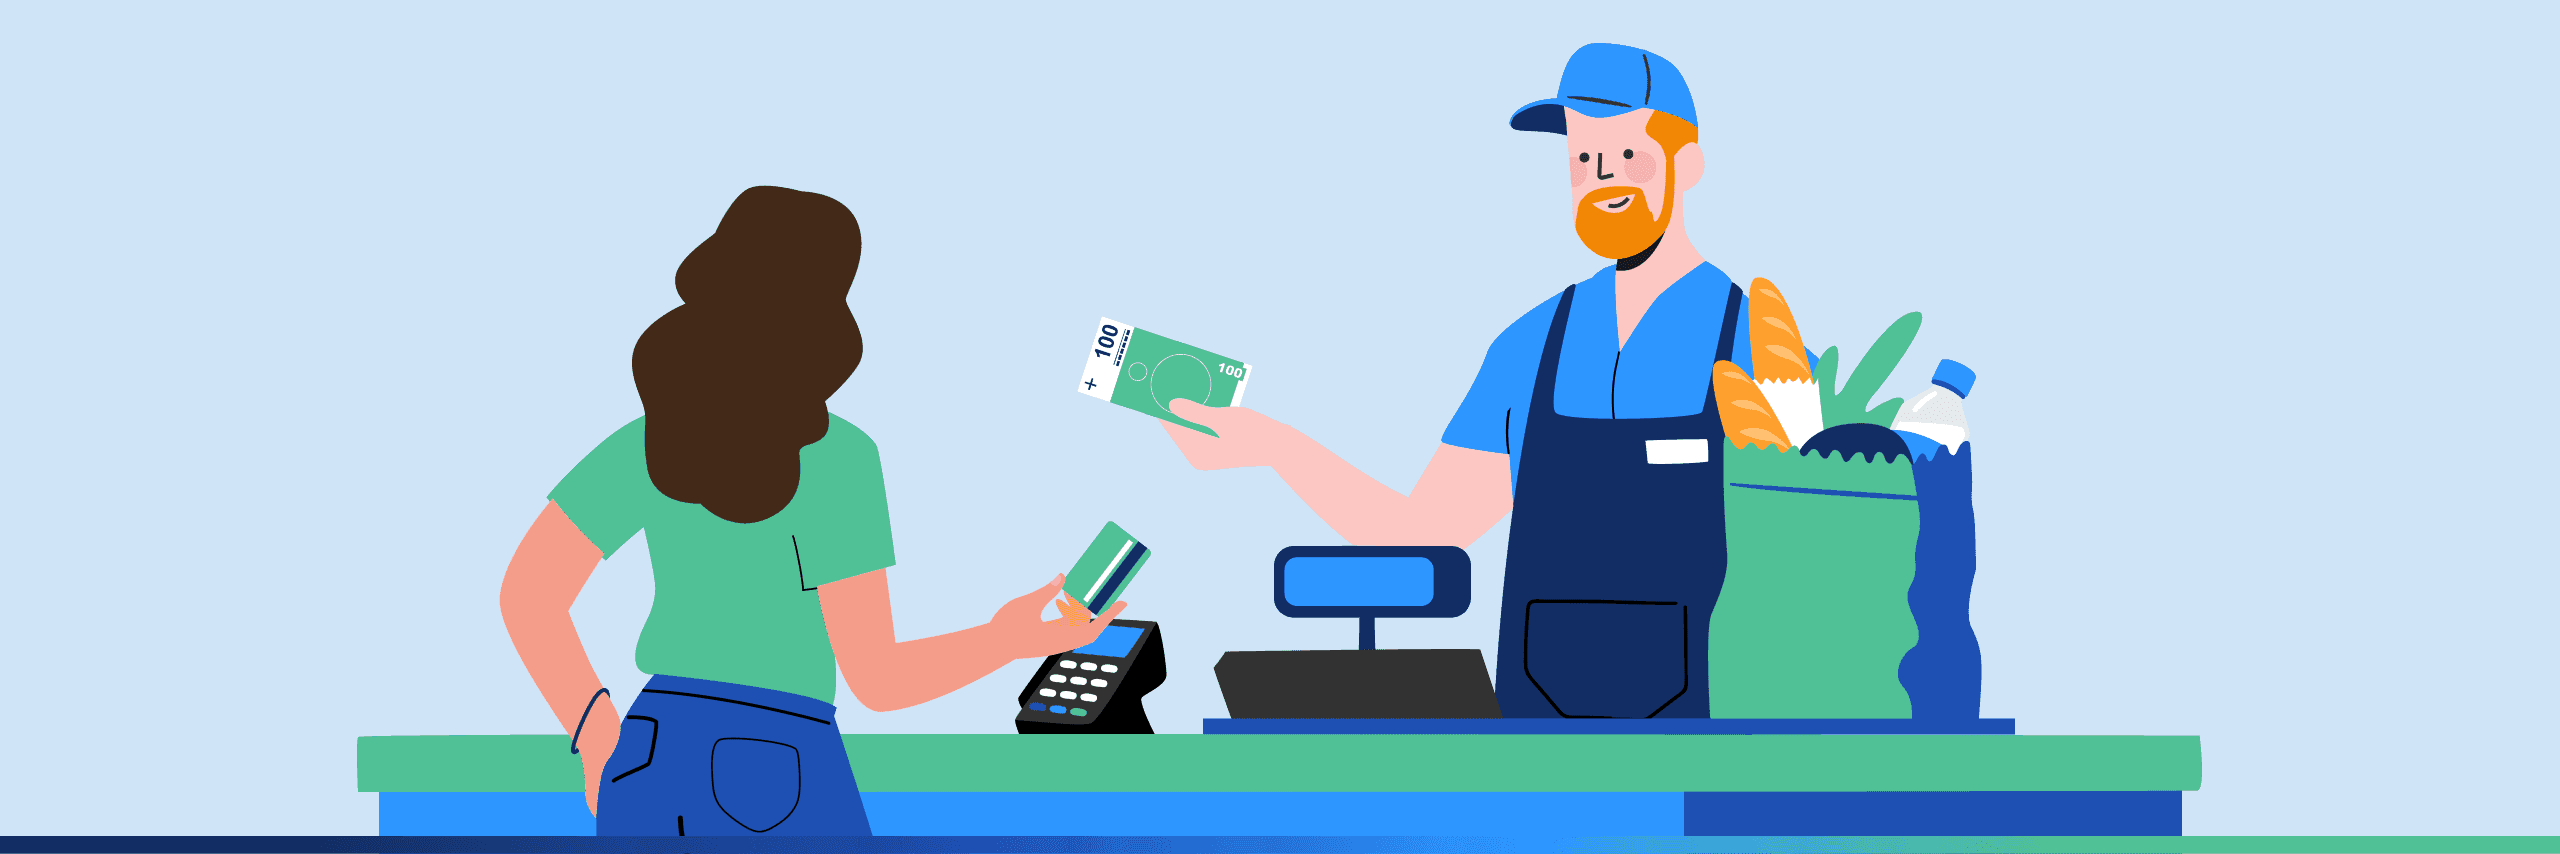 Płać kartą za zakupy i wypłacaj gotówkę – z usługą cashback to możliwe!